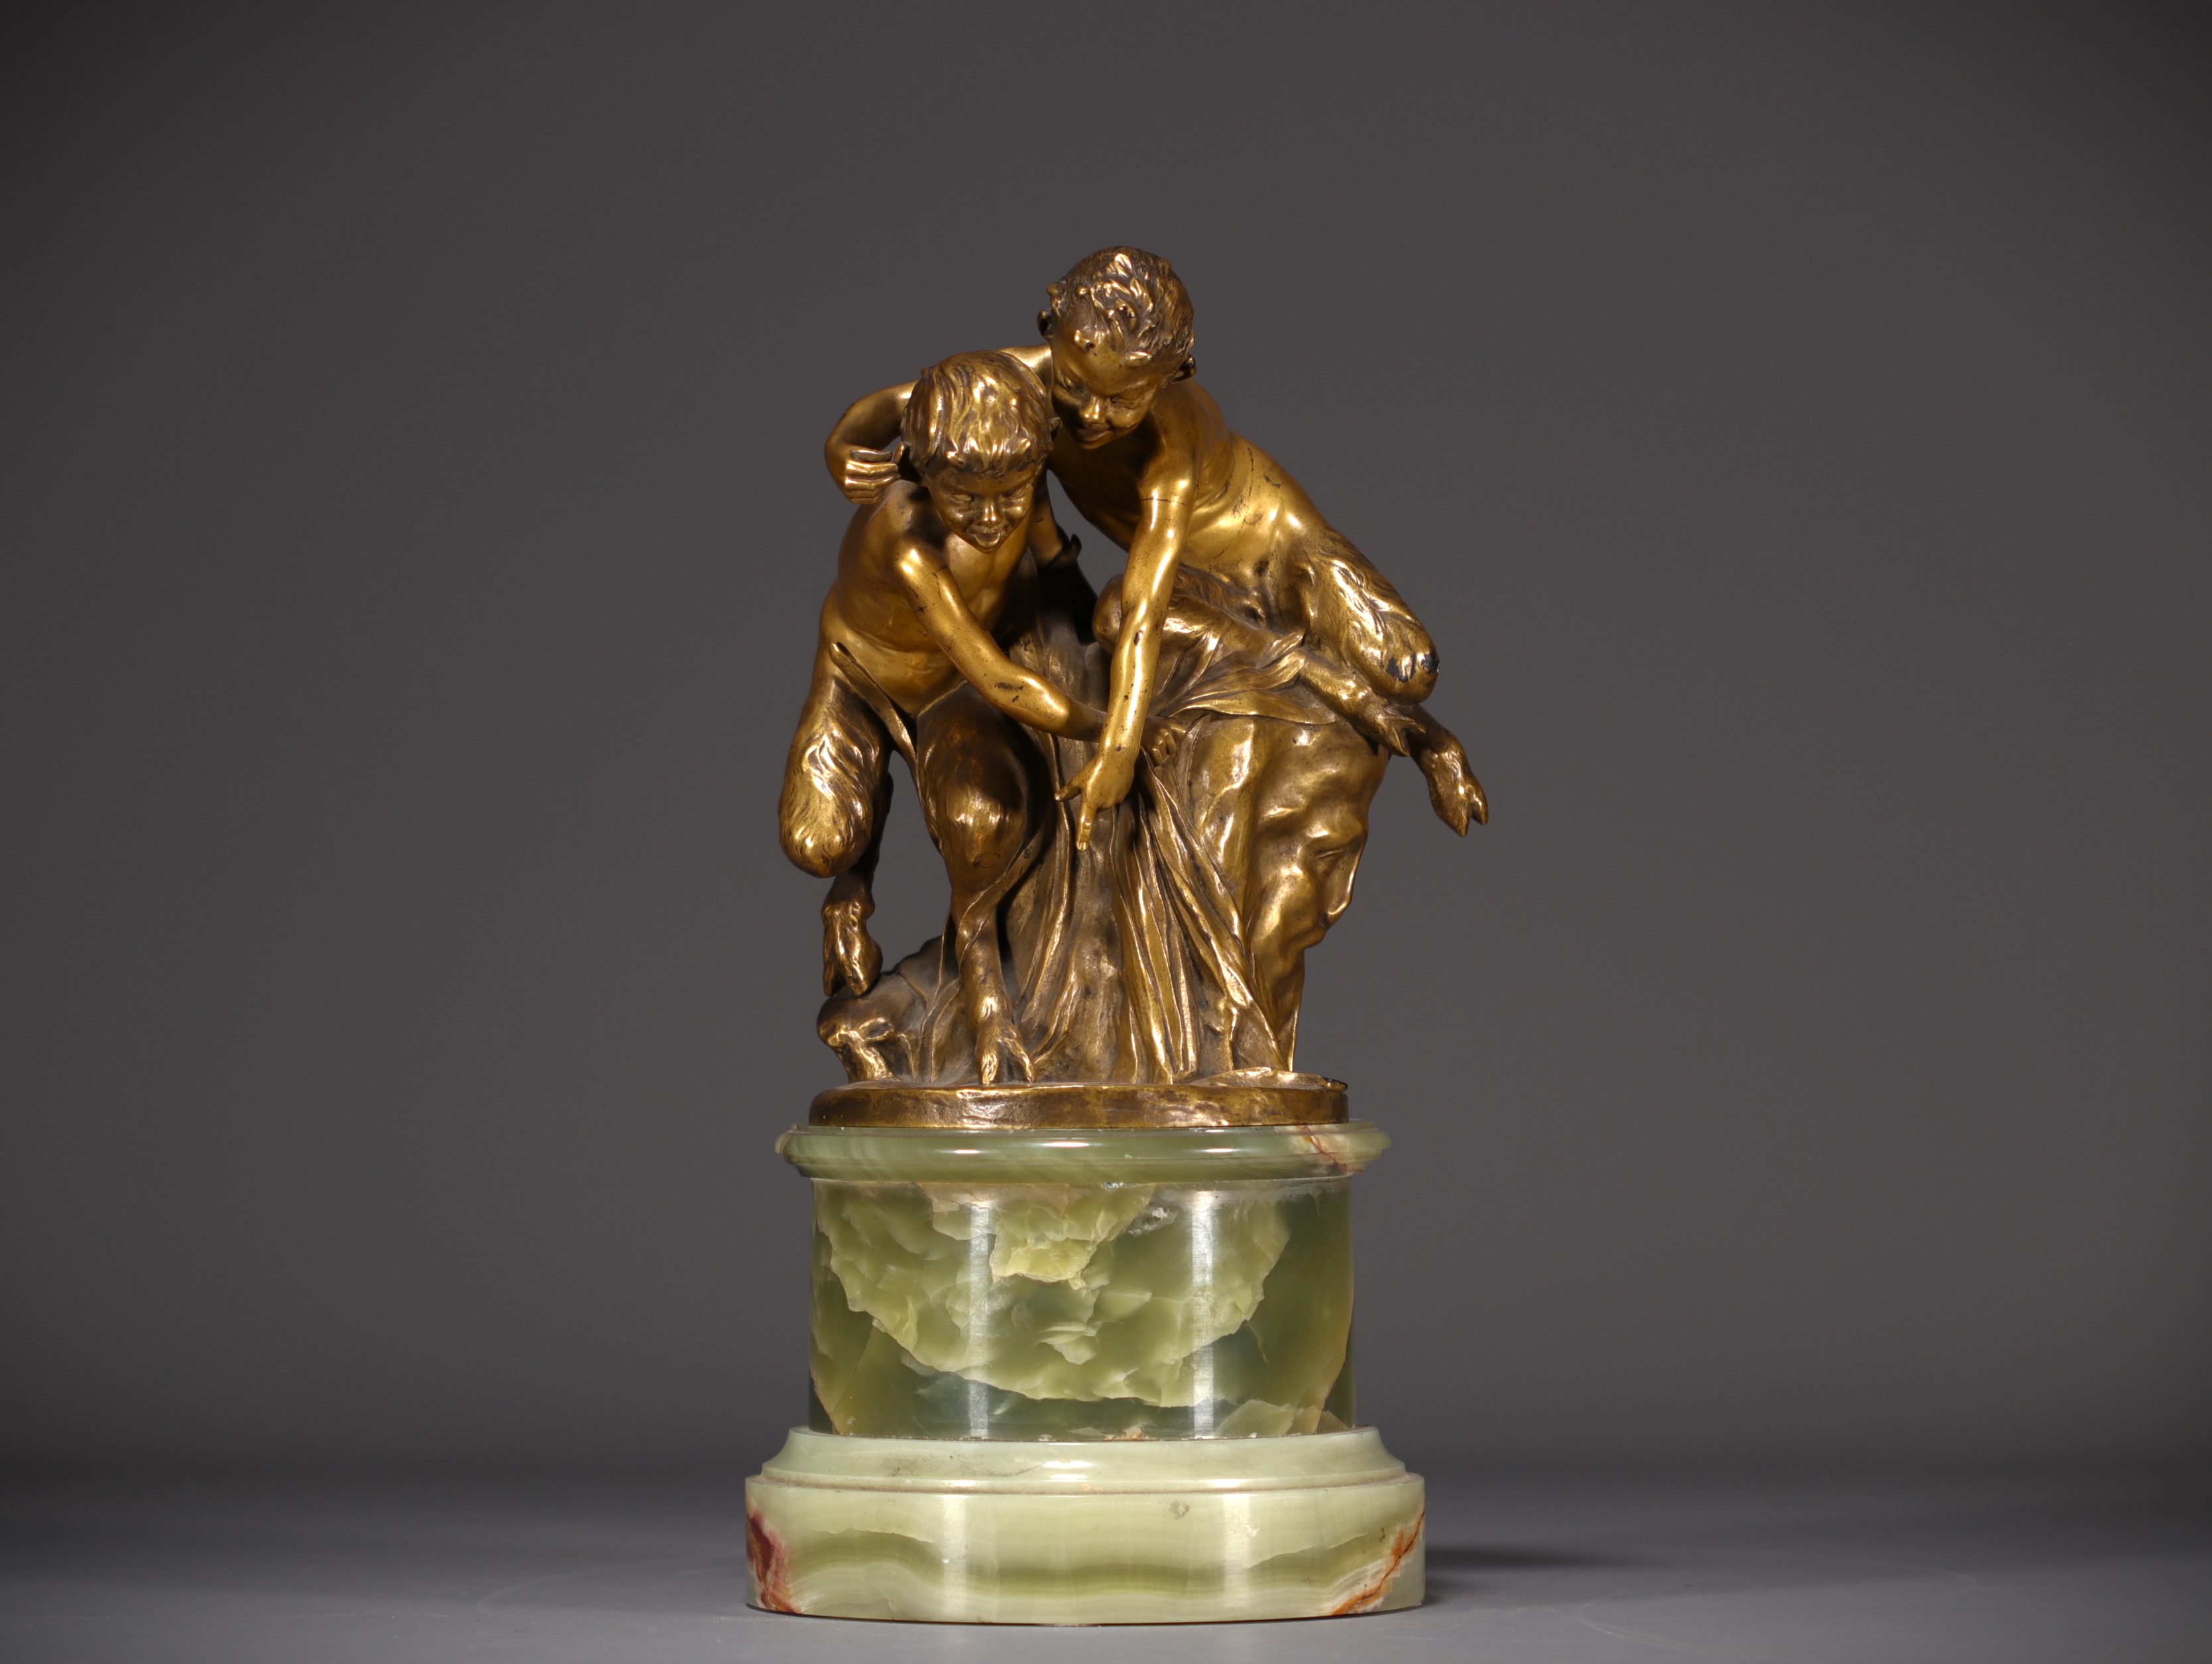 Raoul LARCHE (1860-1912) "Jeunes Faunes" Gilt bronze on marble base, signed. - Image 6 of 8